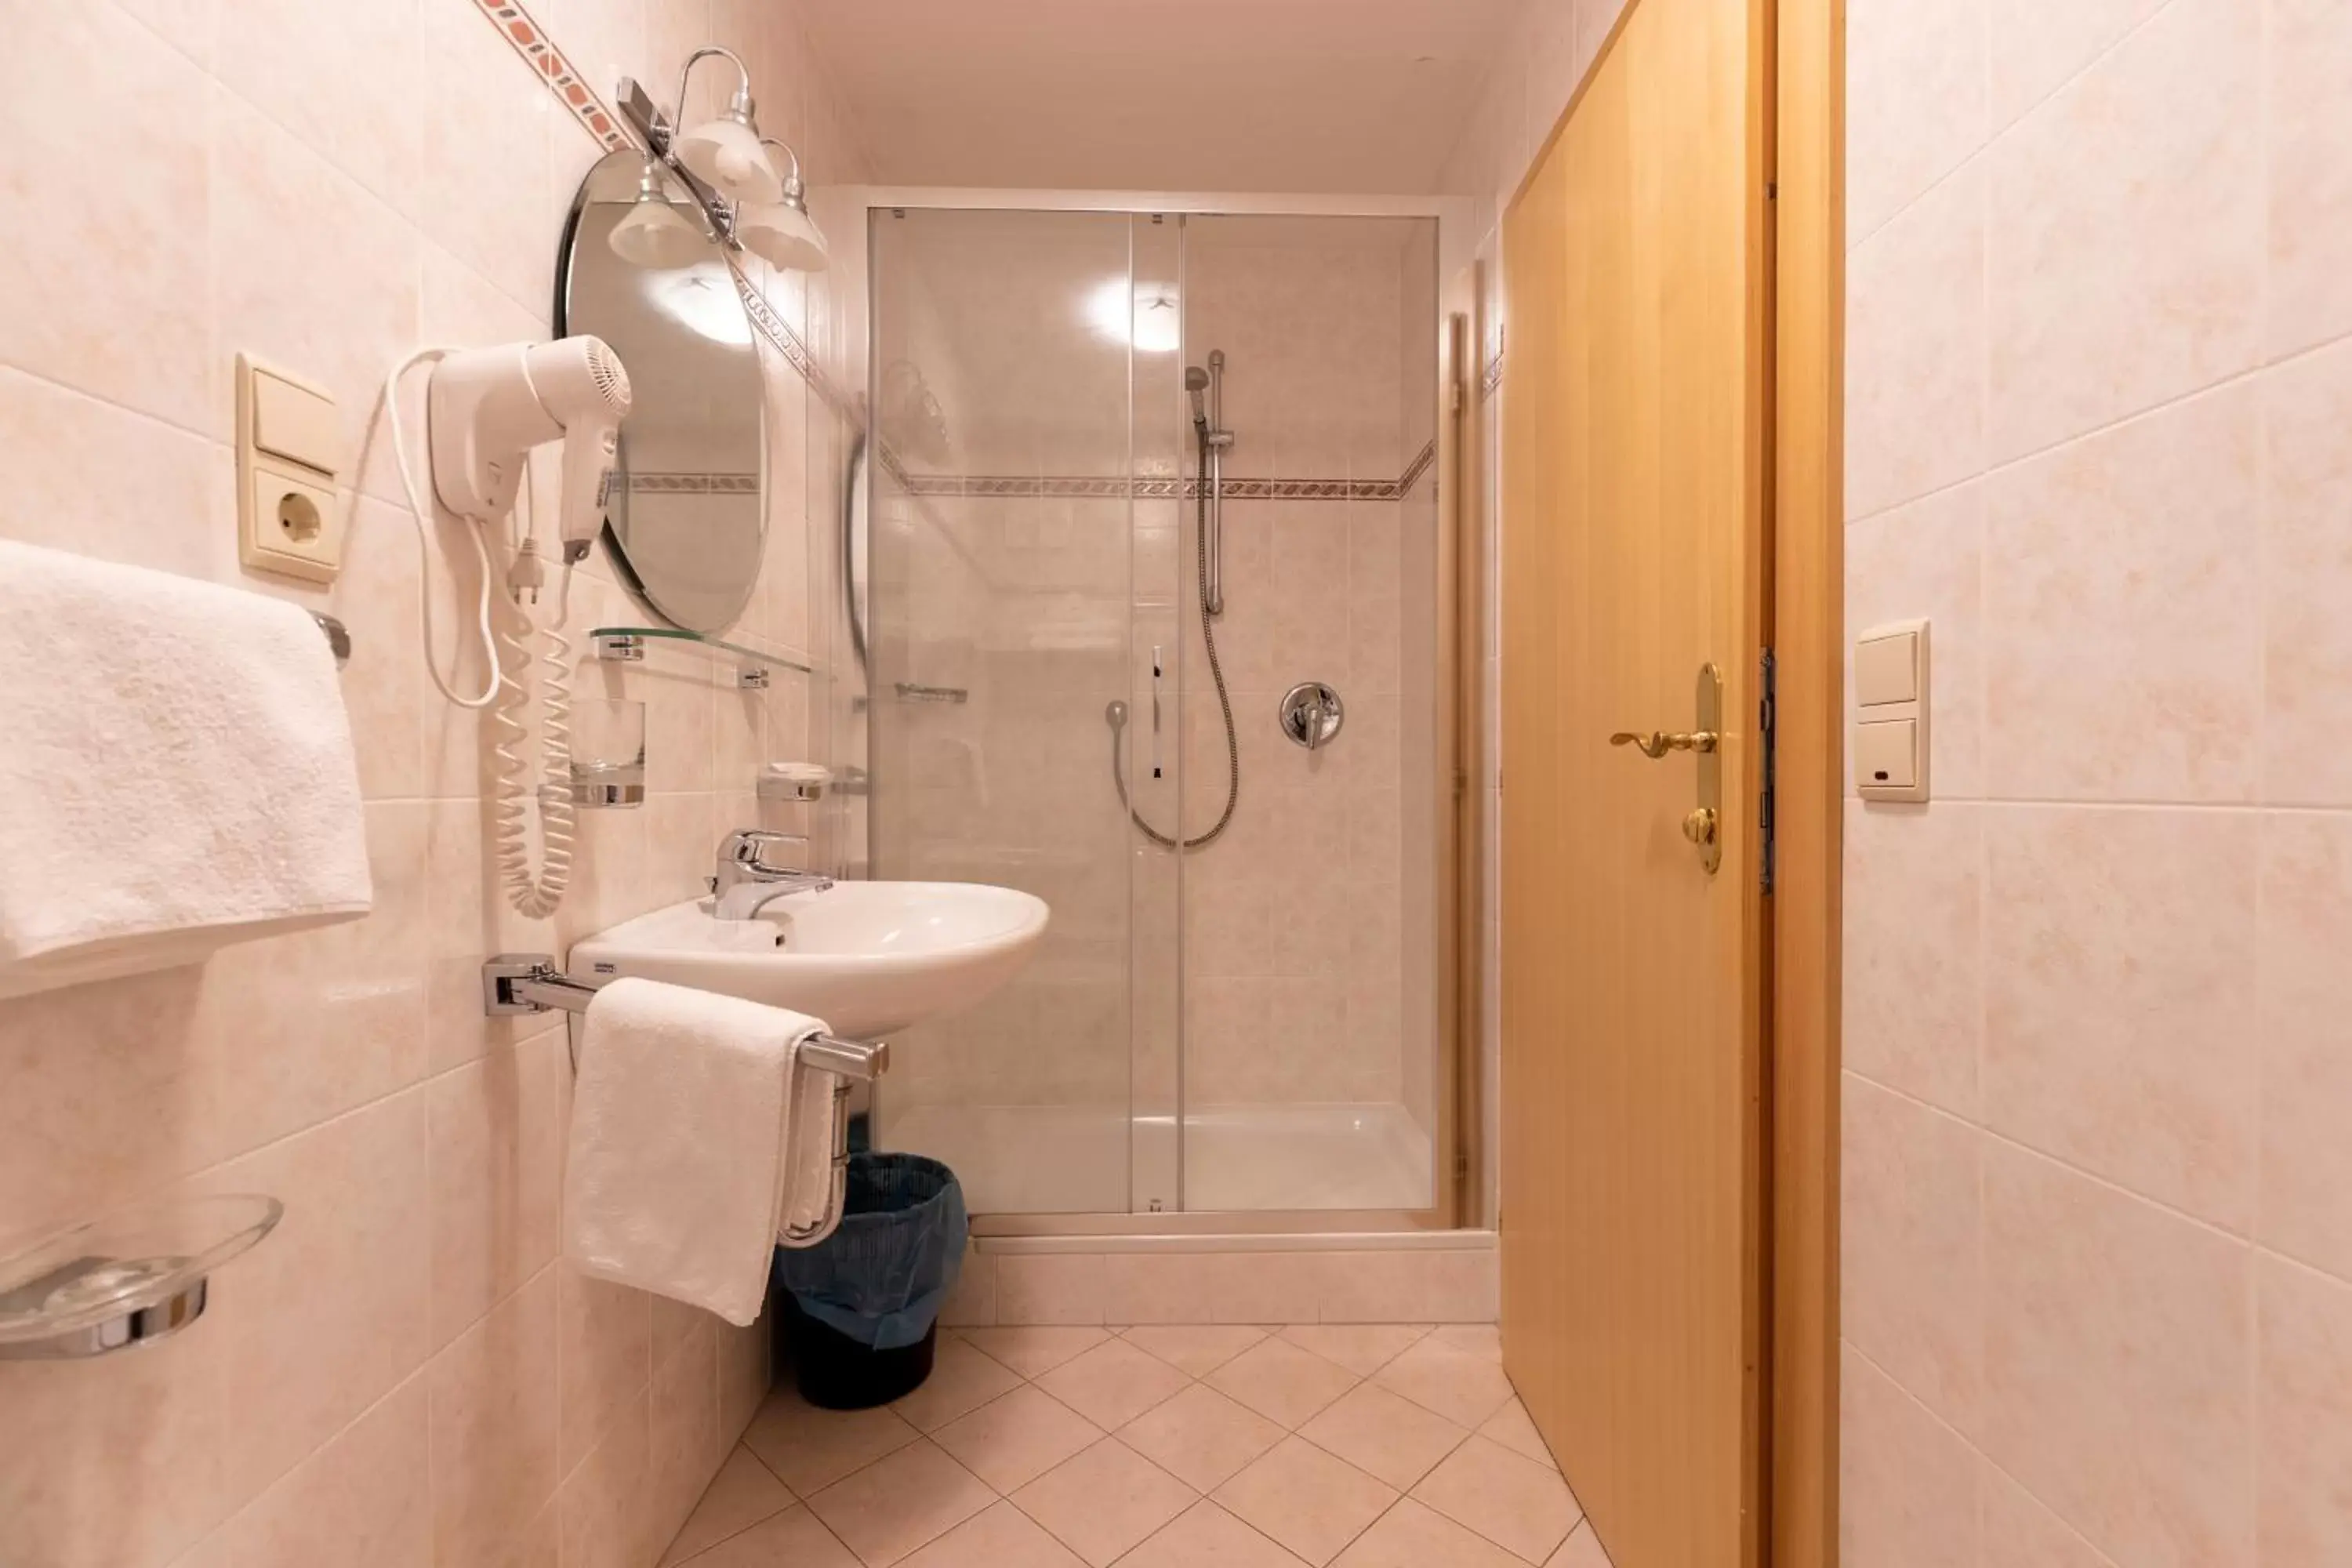 Bathroom in Hotel Tyrol